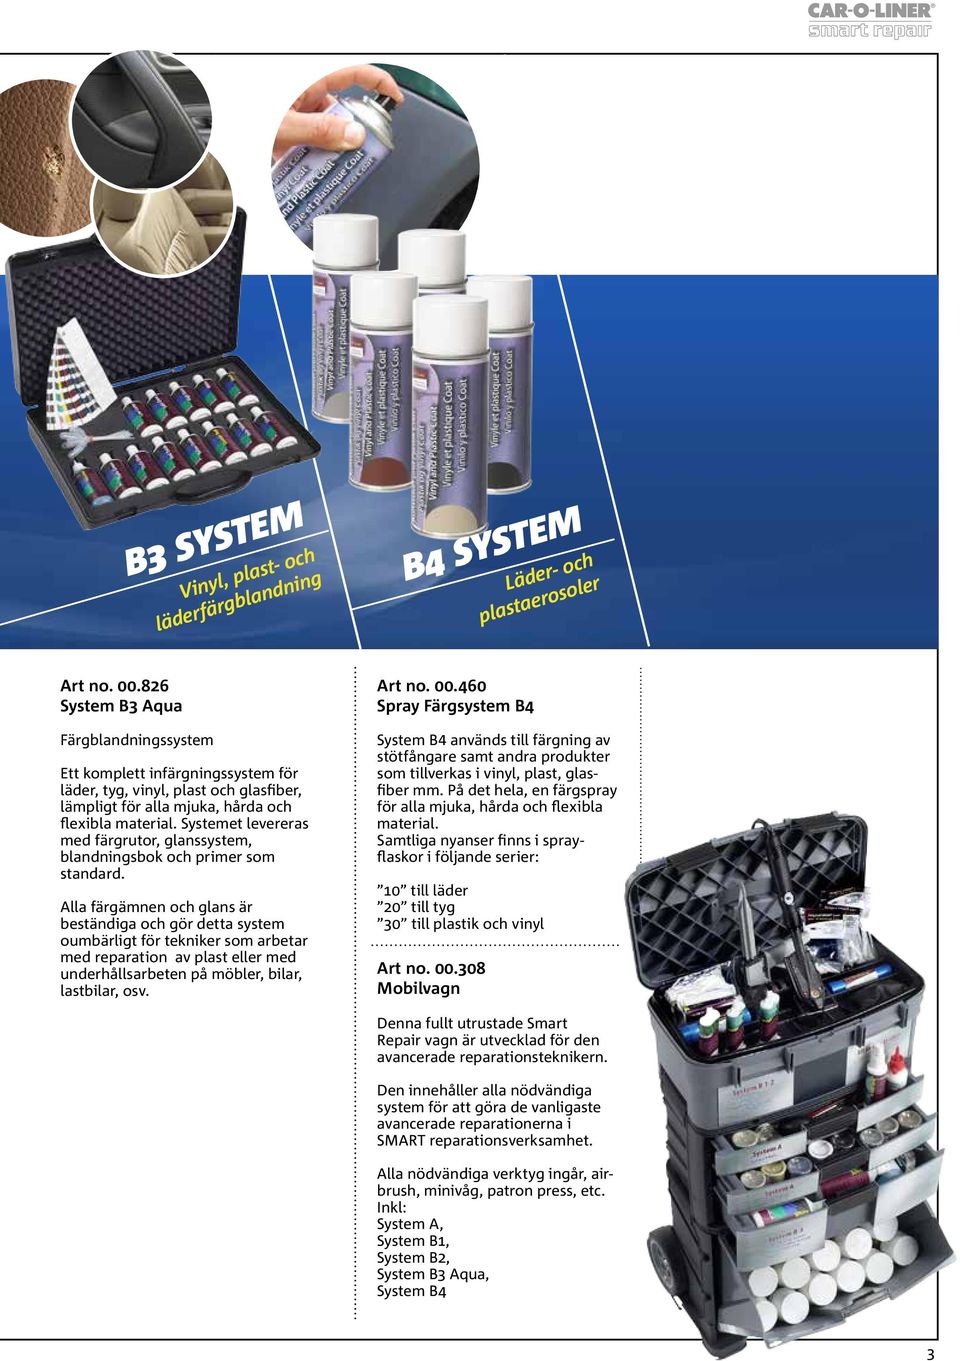 Systemet levereras med färgrutor, glanssystem, blandningsbok och primer som standard.